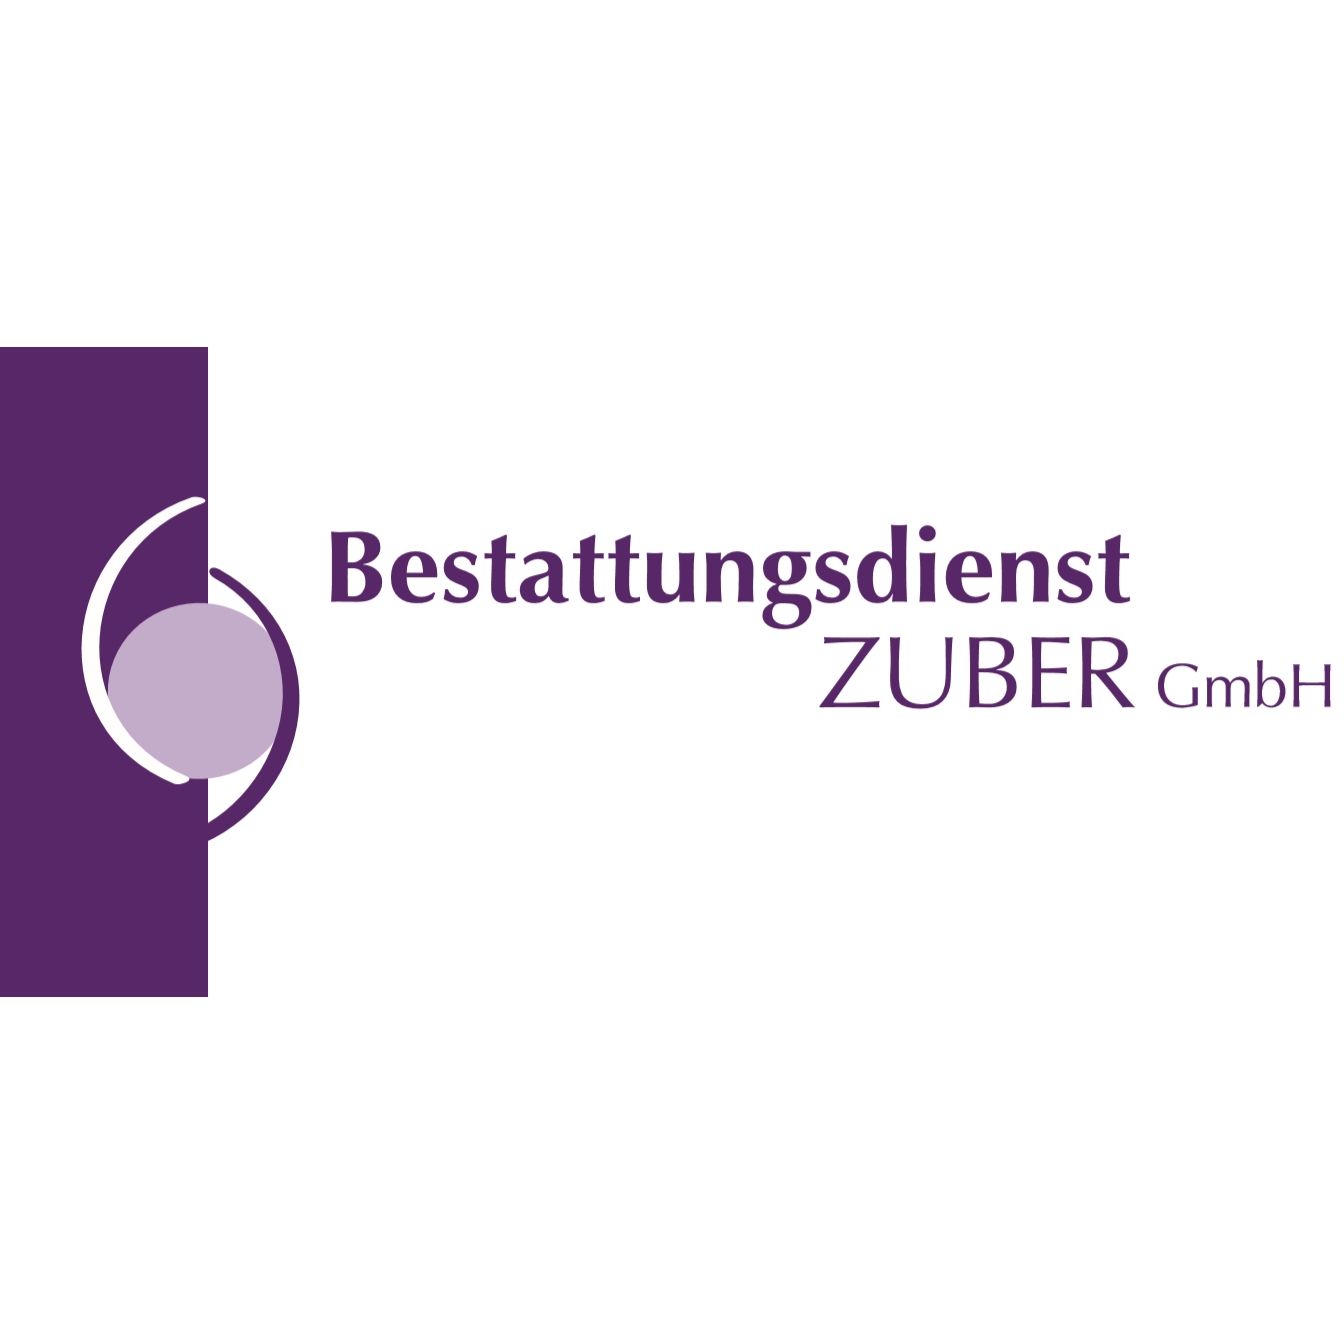 Bestattungsdienst ZUBER GmbH Logo